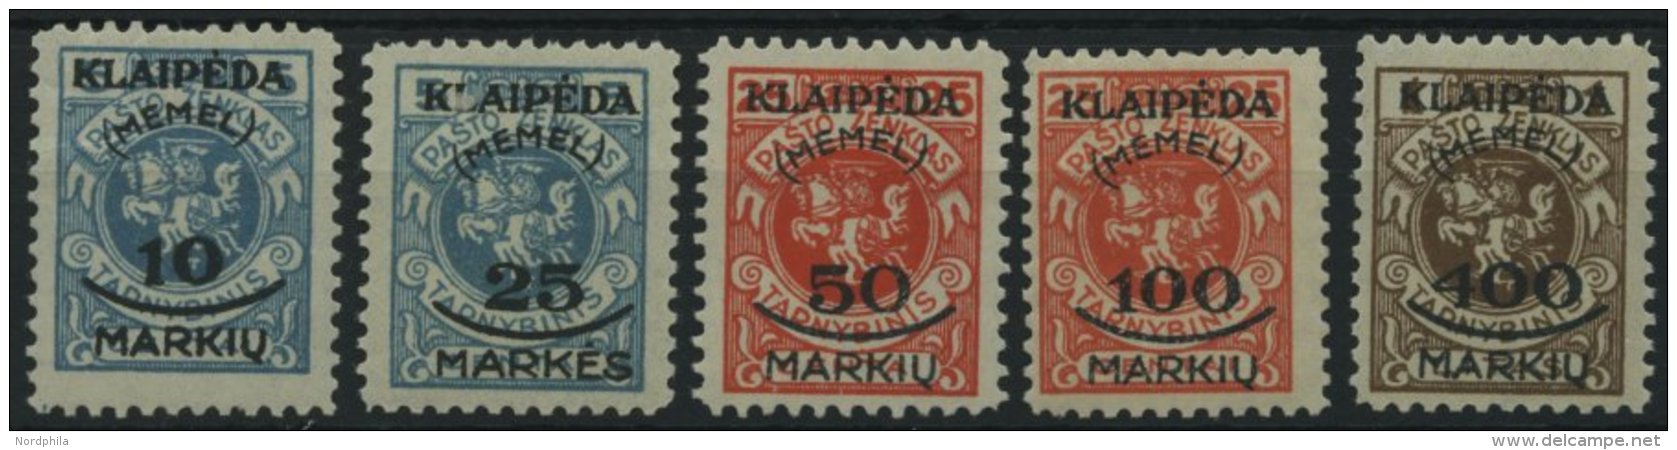 MEMELGEBIET 124-28 **, 1923, Staatsdruckerei Kowno, Postfrisch, 10 M. Kleine Gummiknitter Sonst Prachtsatz, Mi. 120.- - Memelgebiet 1923